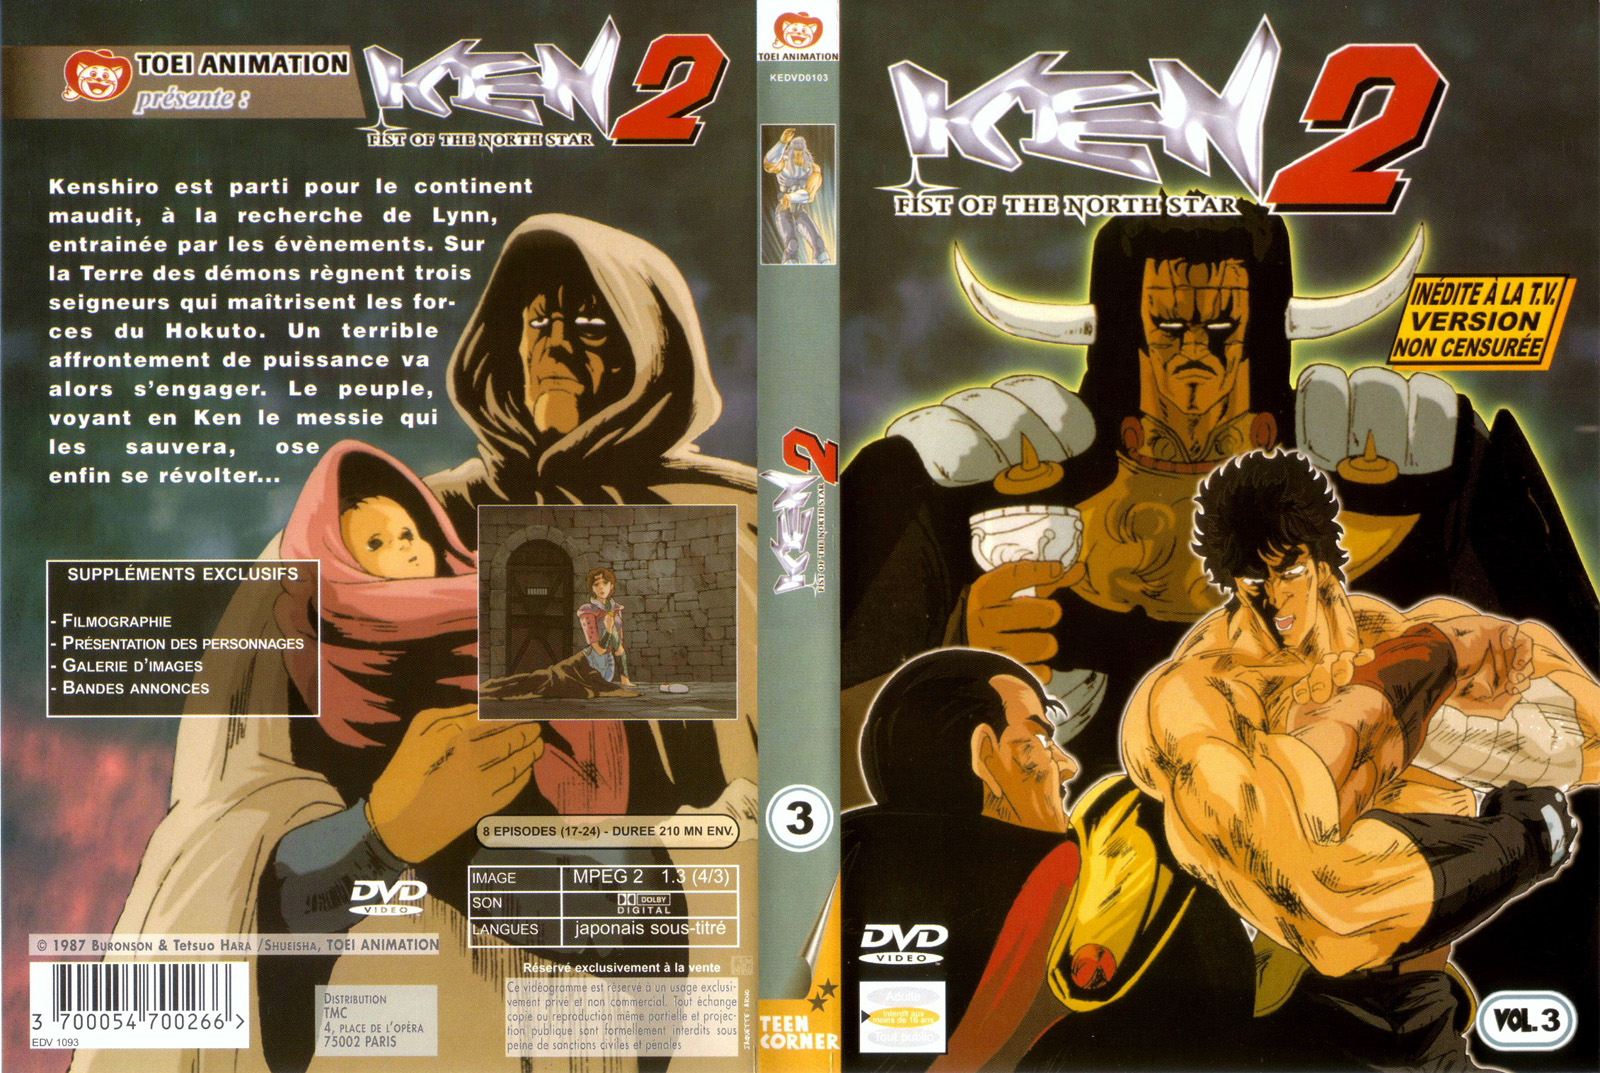 Jaquette DVD Ken 2 vol 3